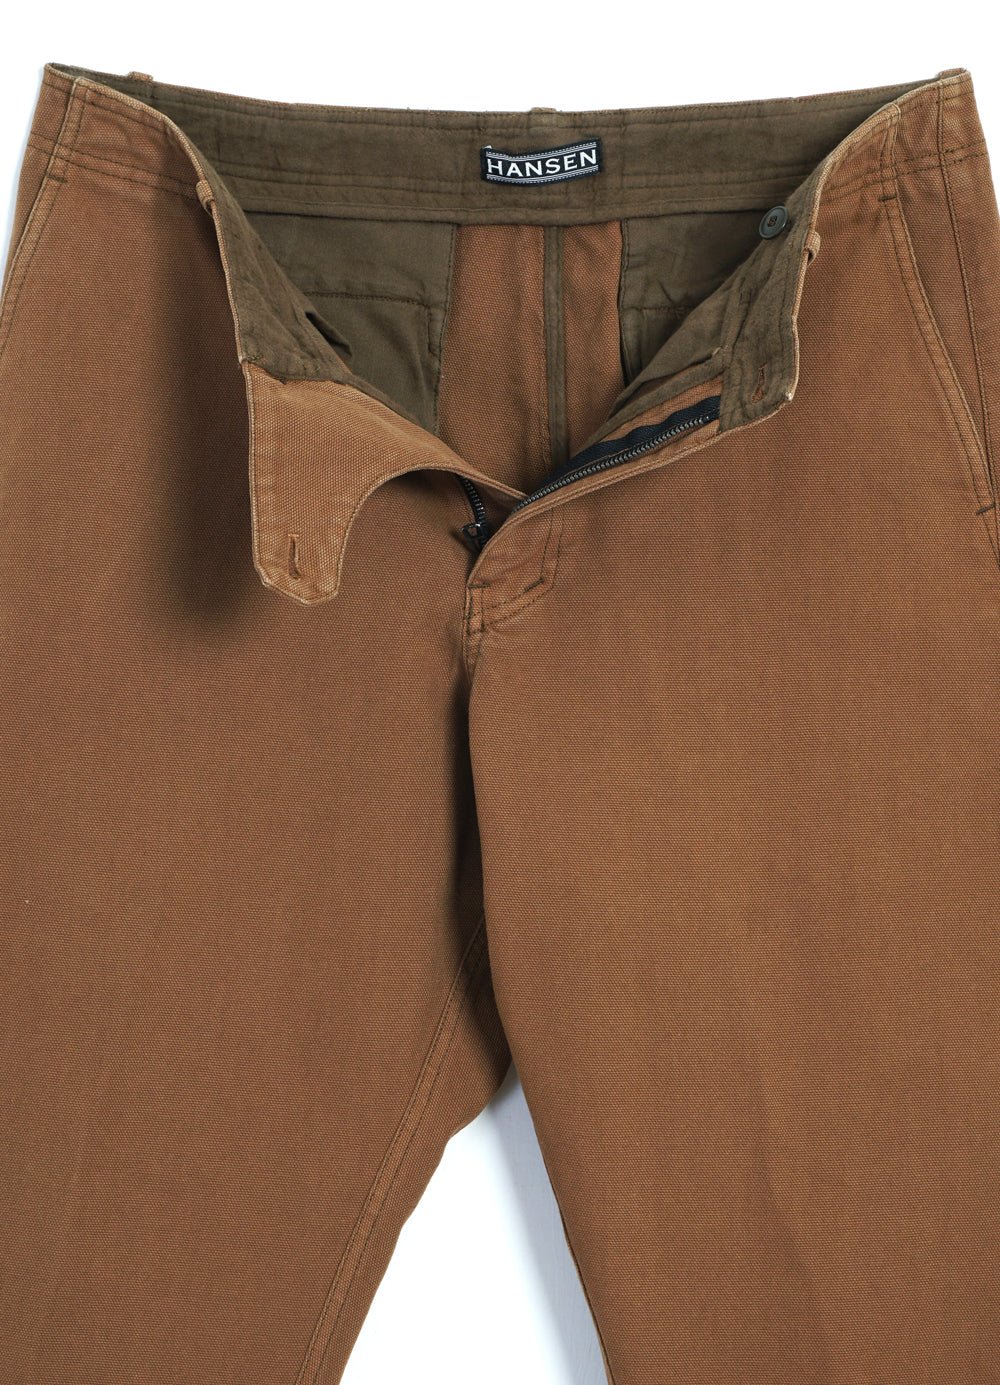 HANSEN GARMENTS - TRYGVE | Wide Cut Cropped Trousers | Terra - HANSEN Garments